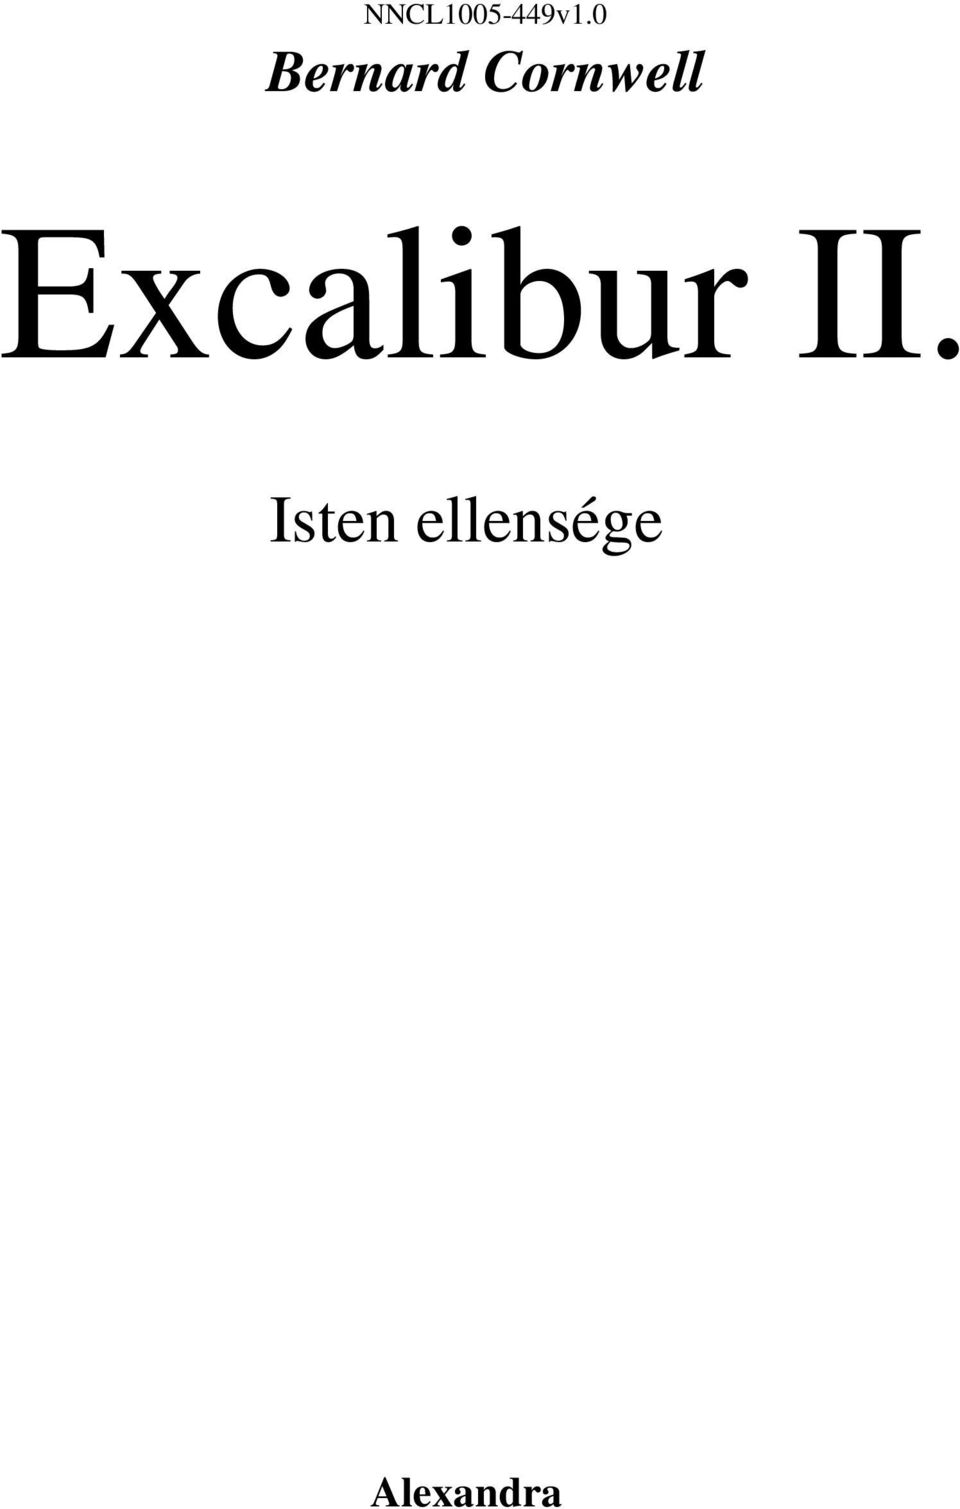 NNCL v1.0 Bernard Cornwell. Excalibur II. Isten ellensége. Alexandra - PDF Ingyenes  letöltés